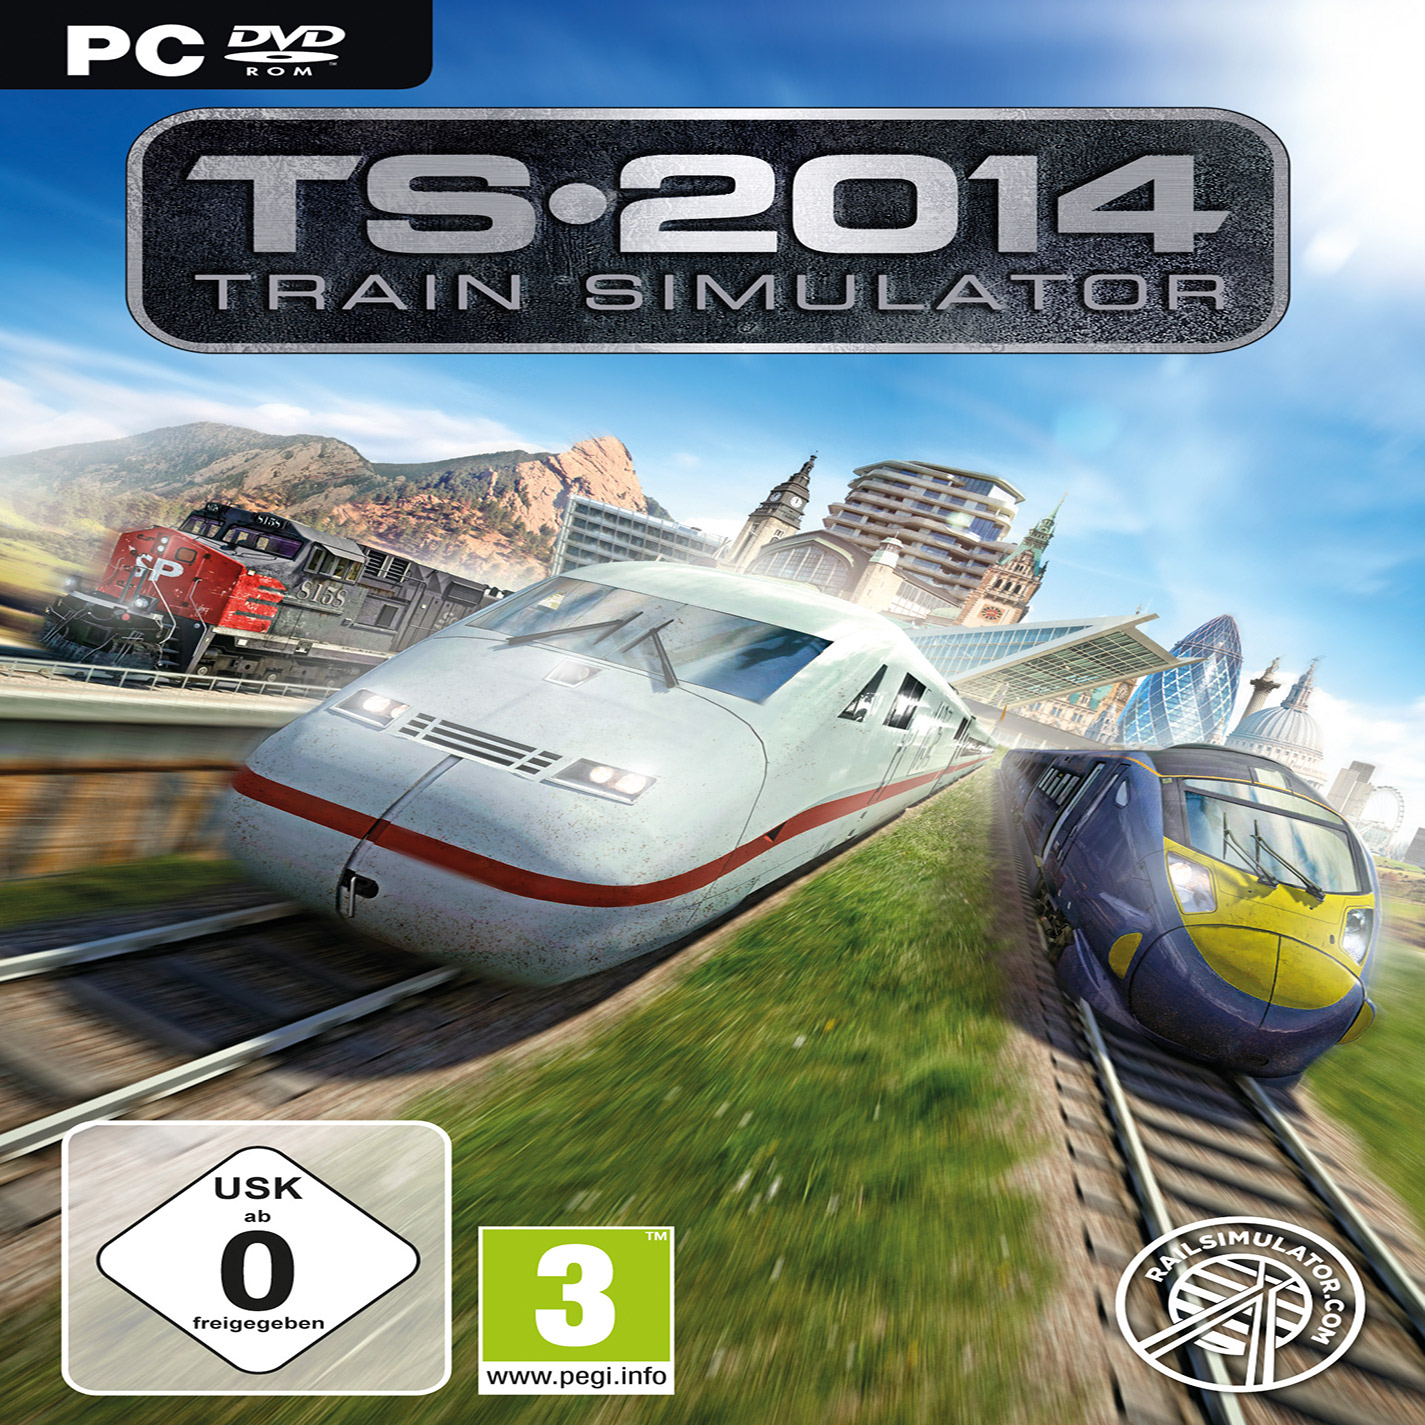 Train Simulator 2014 - pedn CD obal